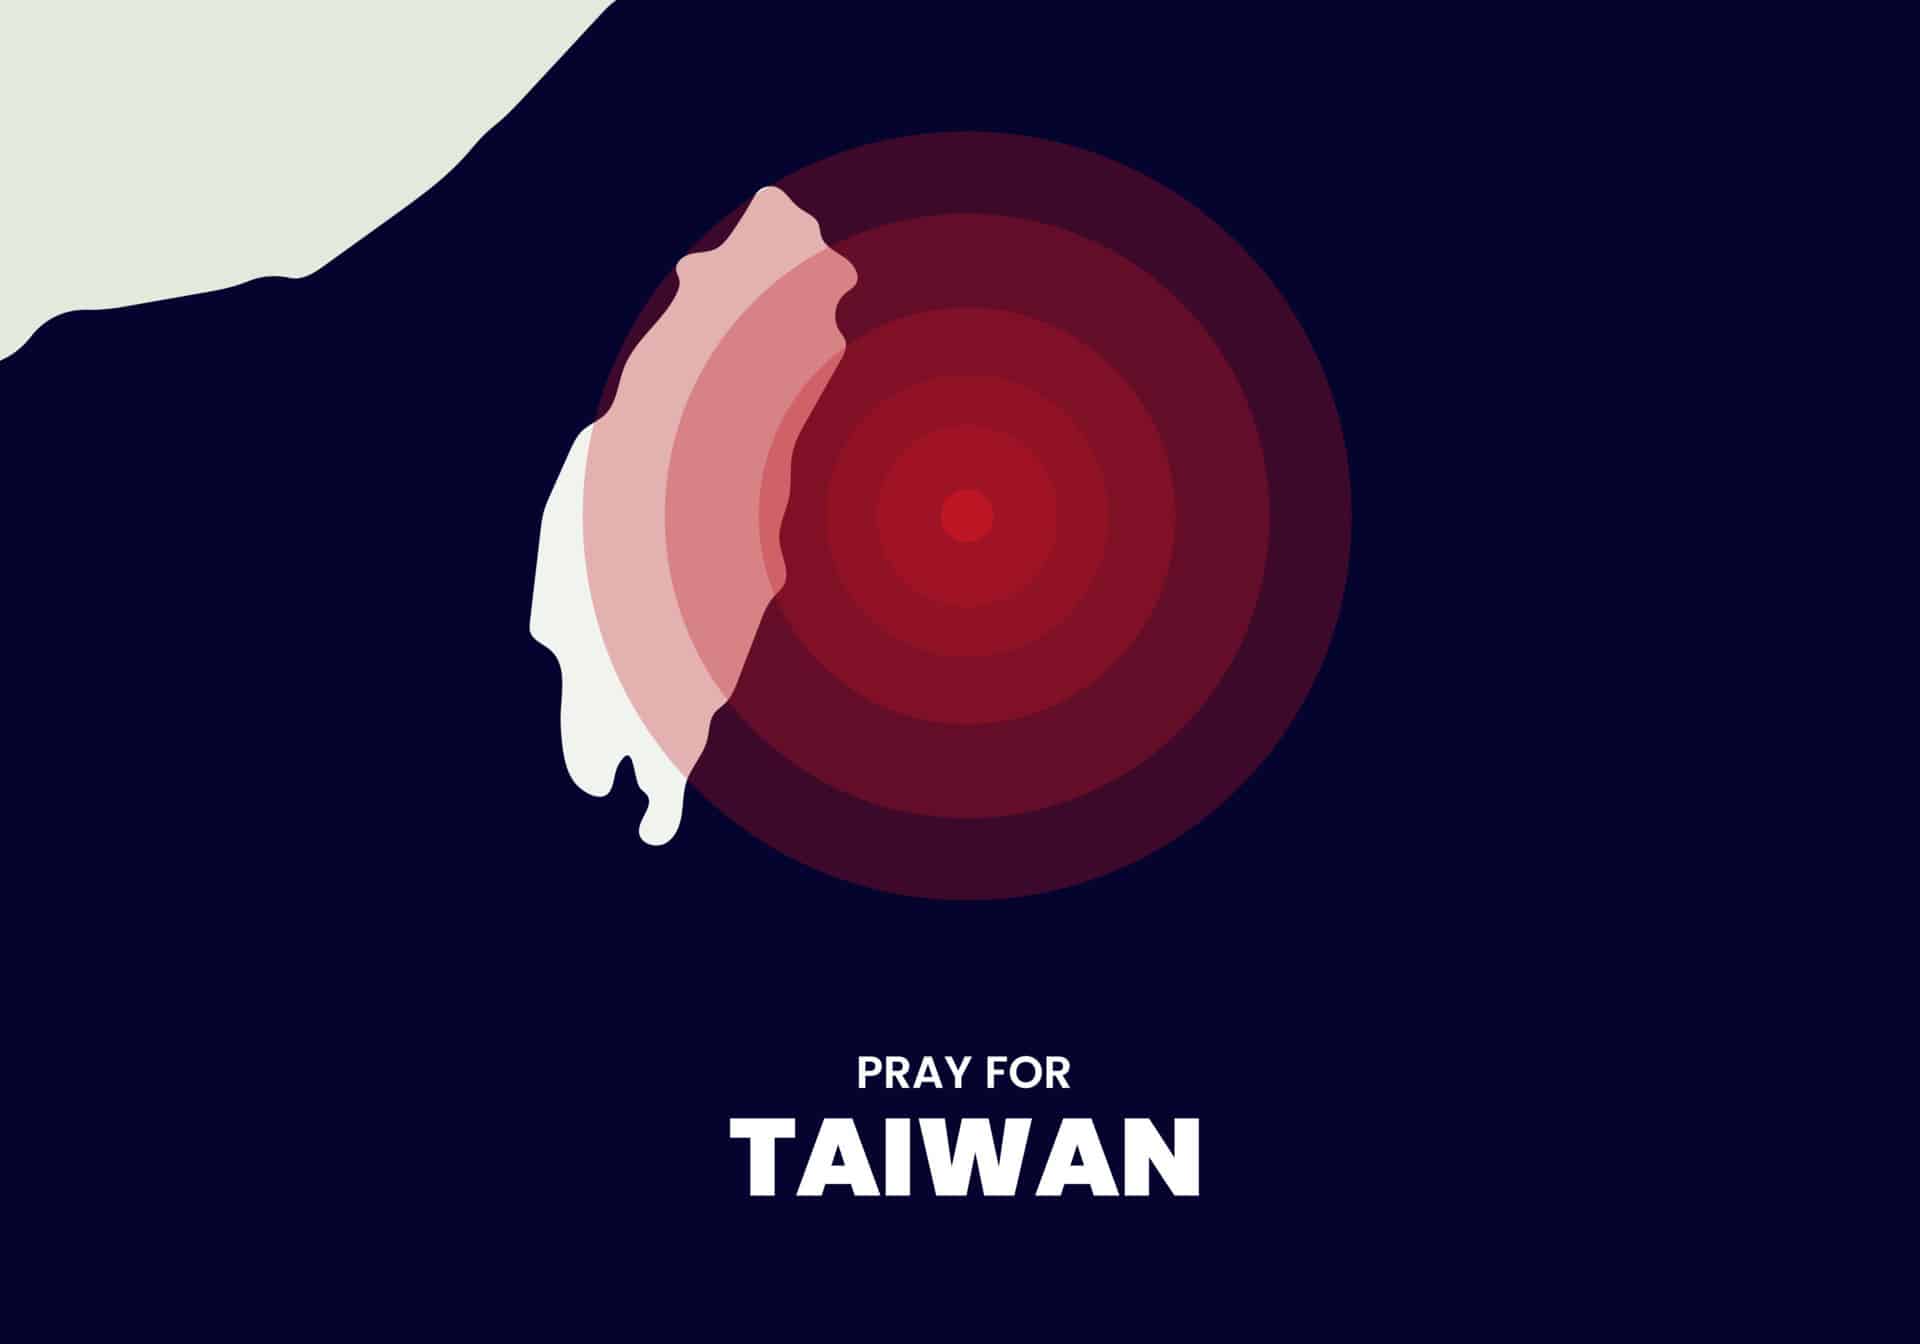 为台湾插图祈祷和支持台湾地震受害者的信息设计矢量